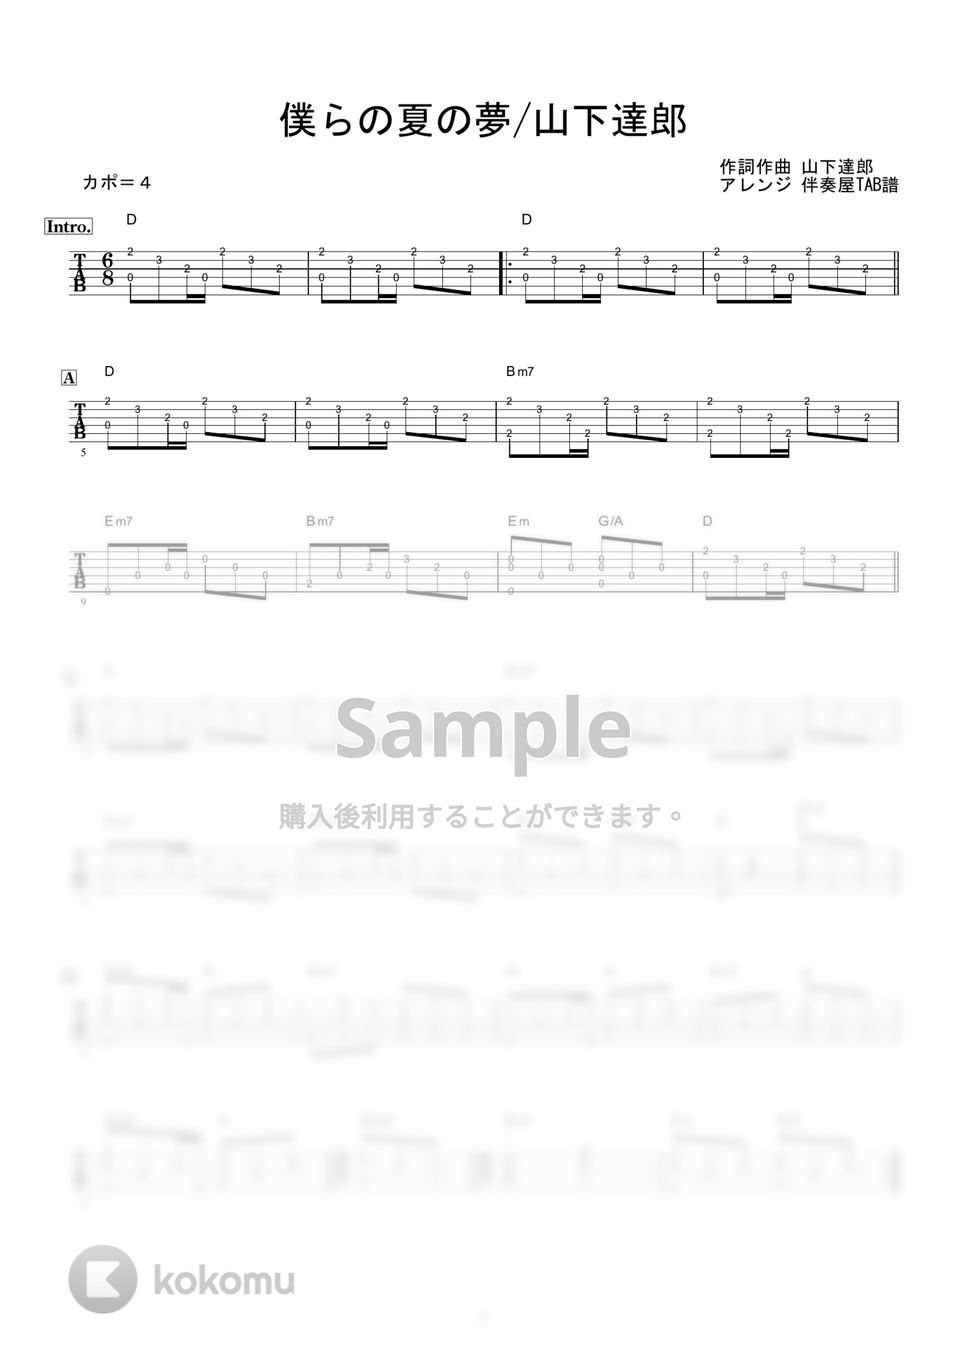 山下達郎 - 僕らの夏の夢 (ギター伴奏/イントロ・間奏ソロギター) by 伴奏屋TAB譜